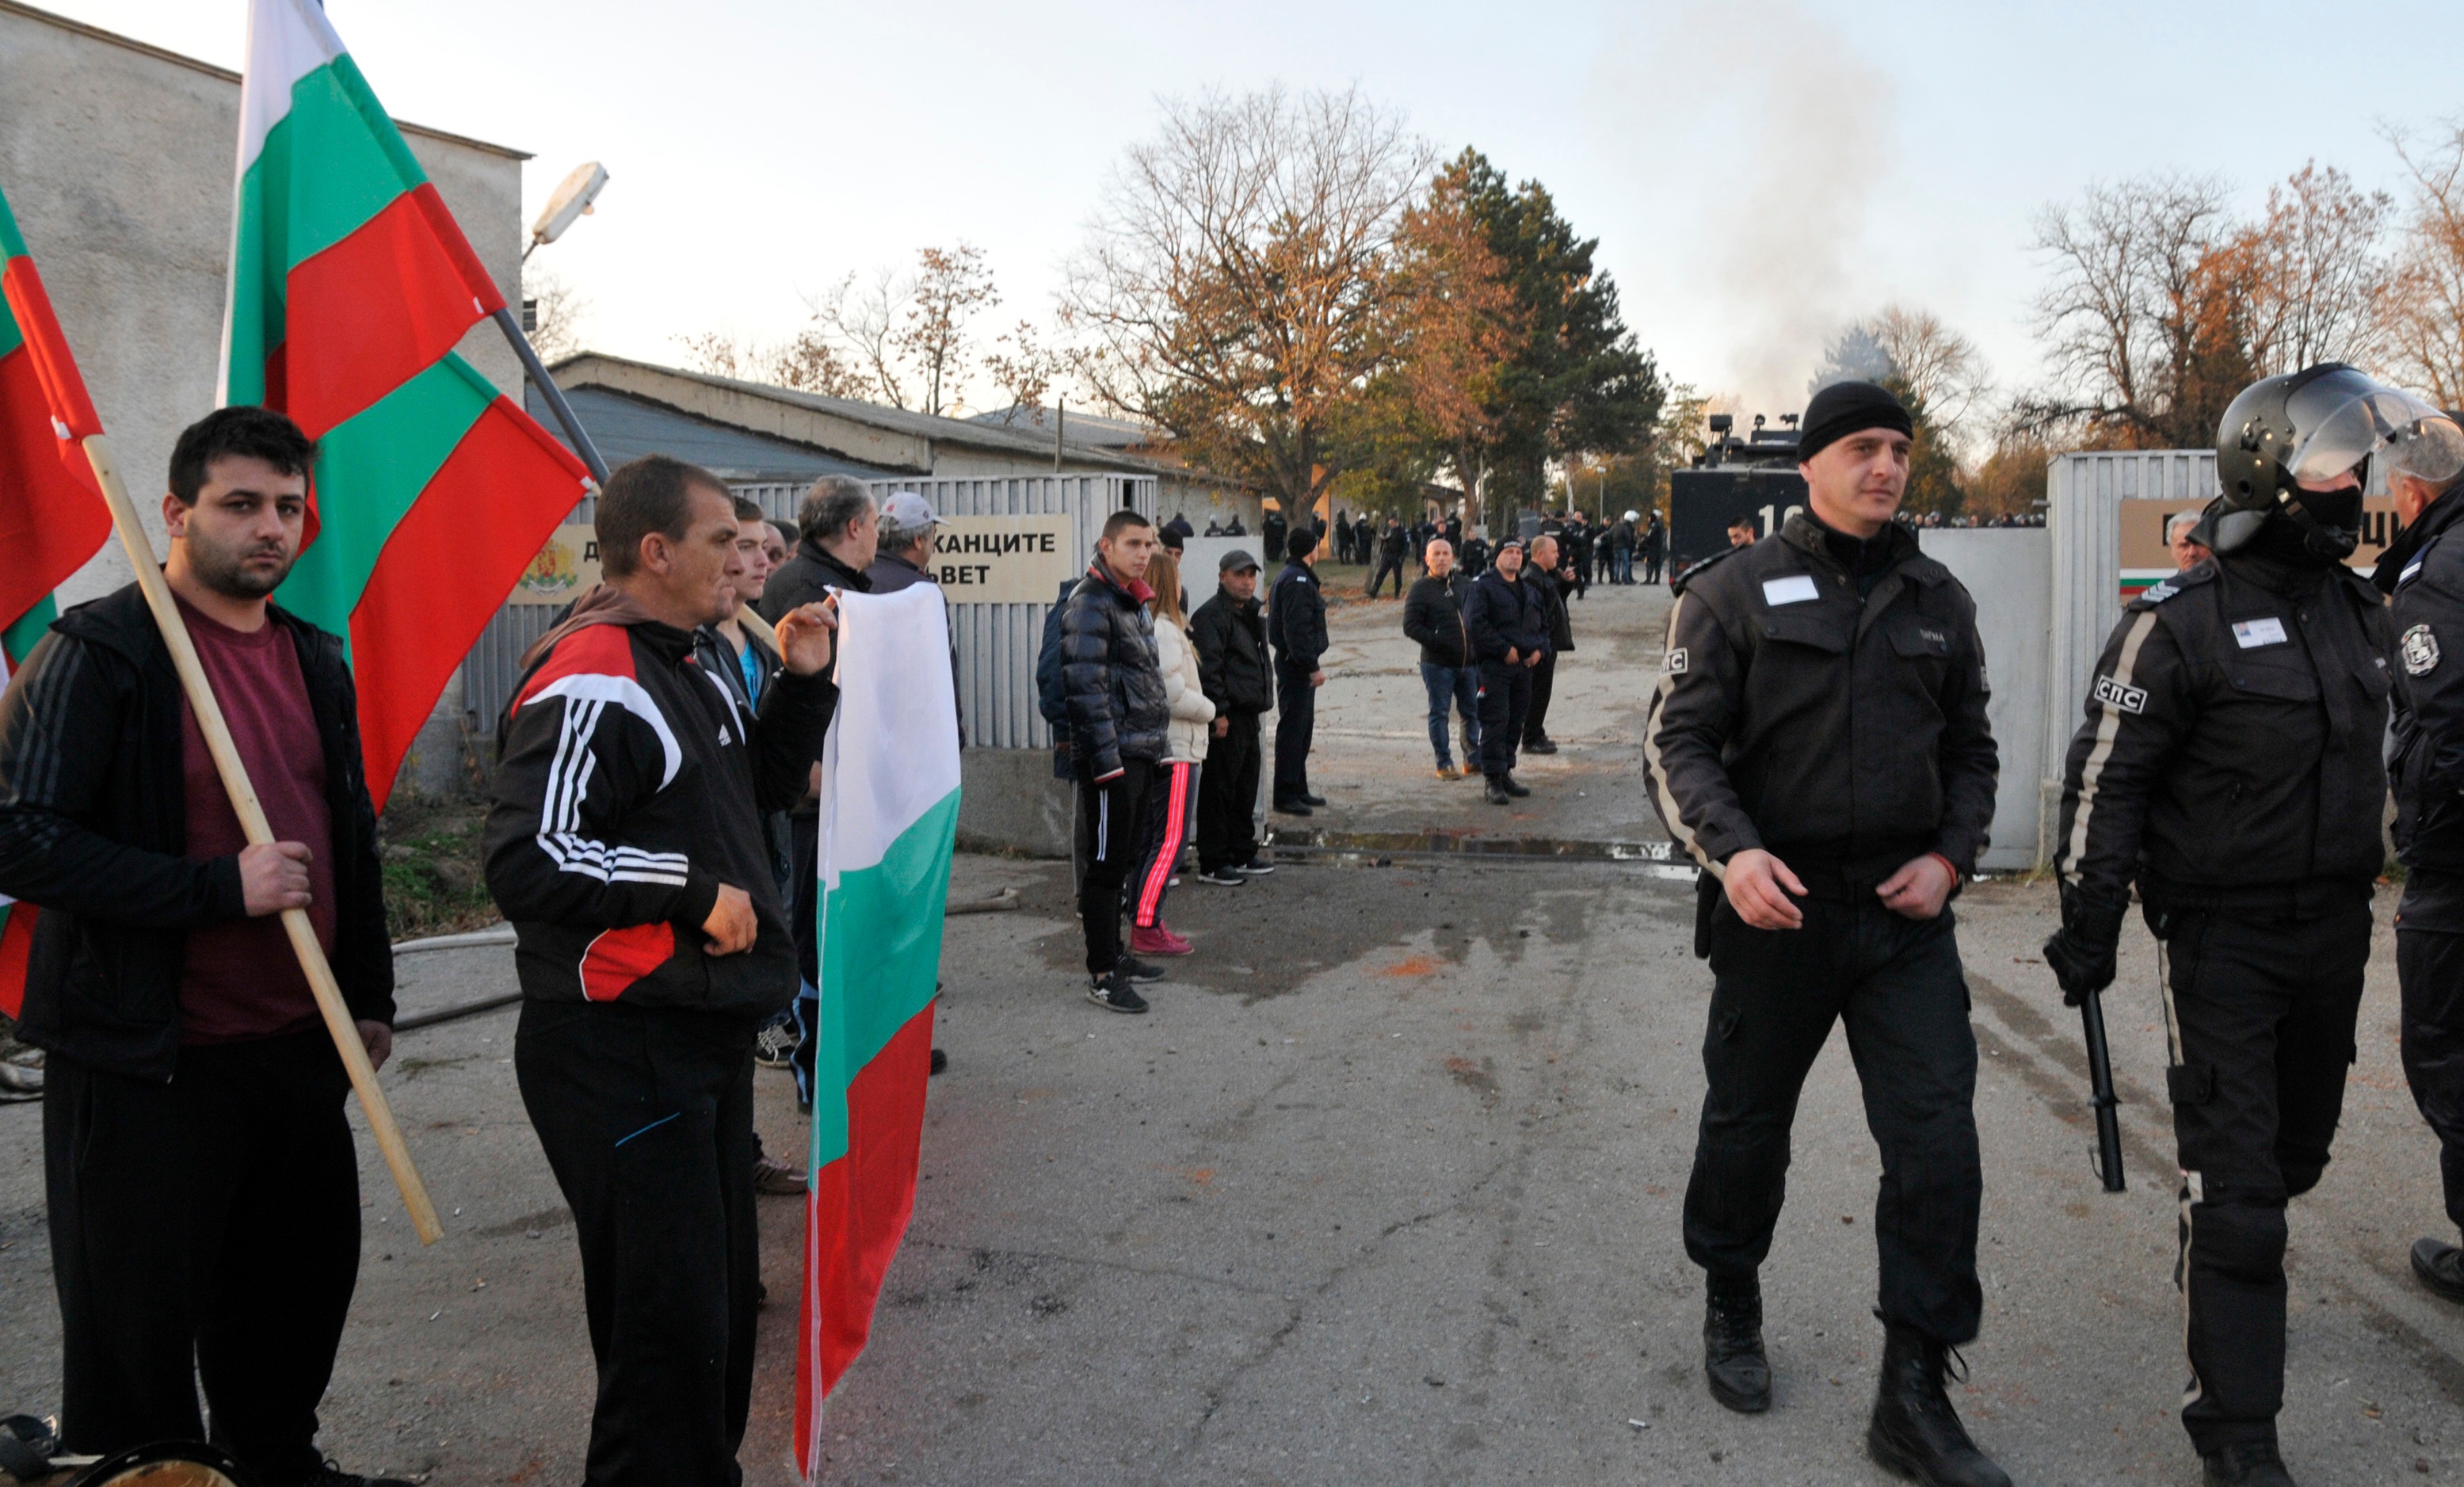 Мигрантите в центъра в Харманли се вдигнаха на бунт с искане границата със Сърбия да бъде отворена и те да сигна до Западна Европа. Полиция и жандармерия е на мястото и използва водно оръжие и гумени куршуми, за да се справи със ситуацията.